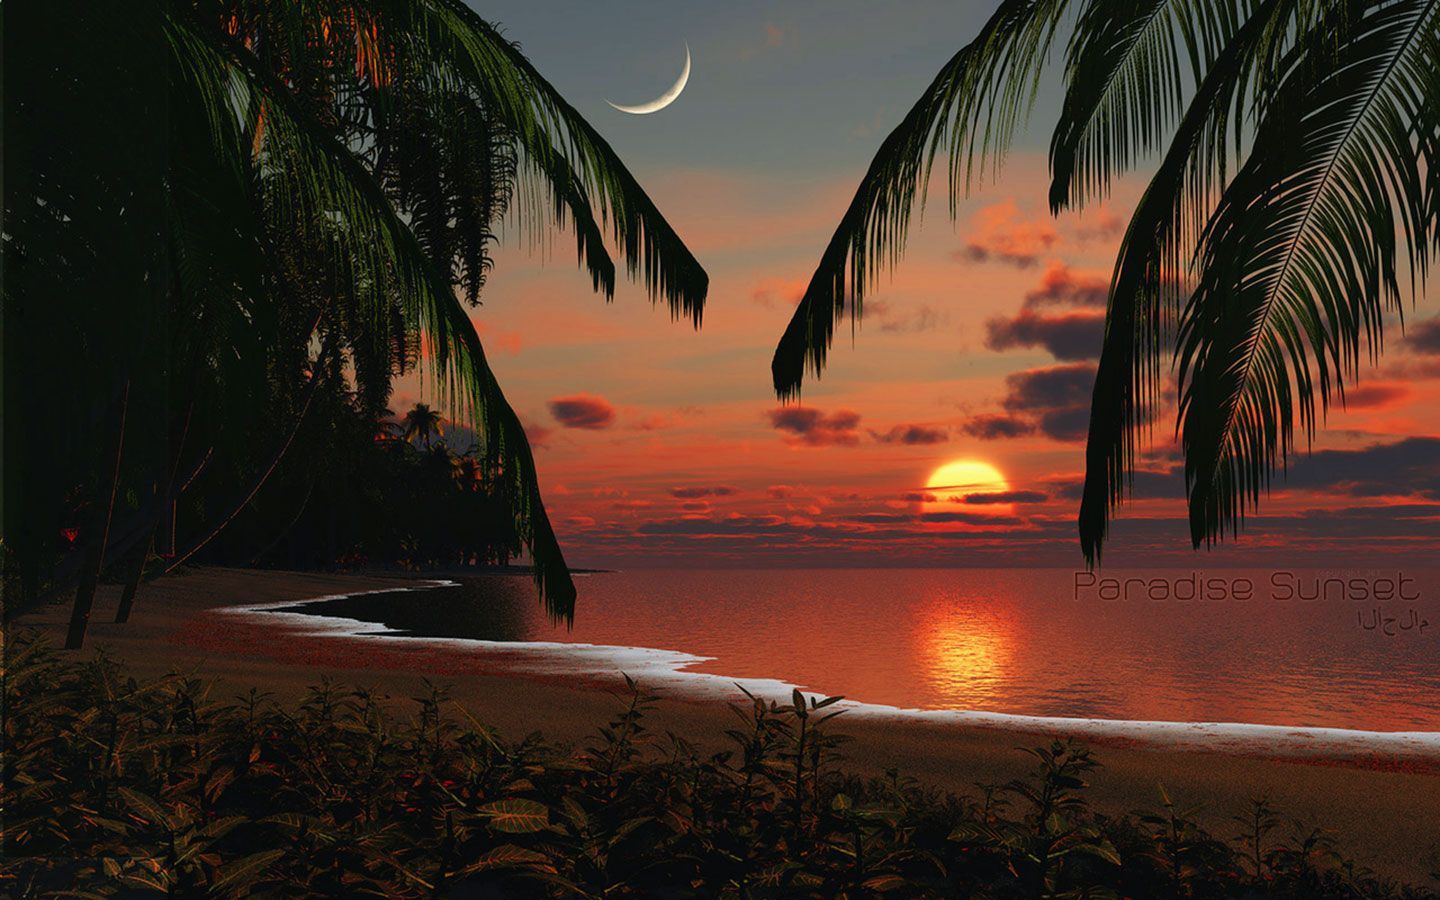 Fondos de pantalla gratis - Fondo de pantalla de Tropical Paradise Sunset | Tropical